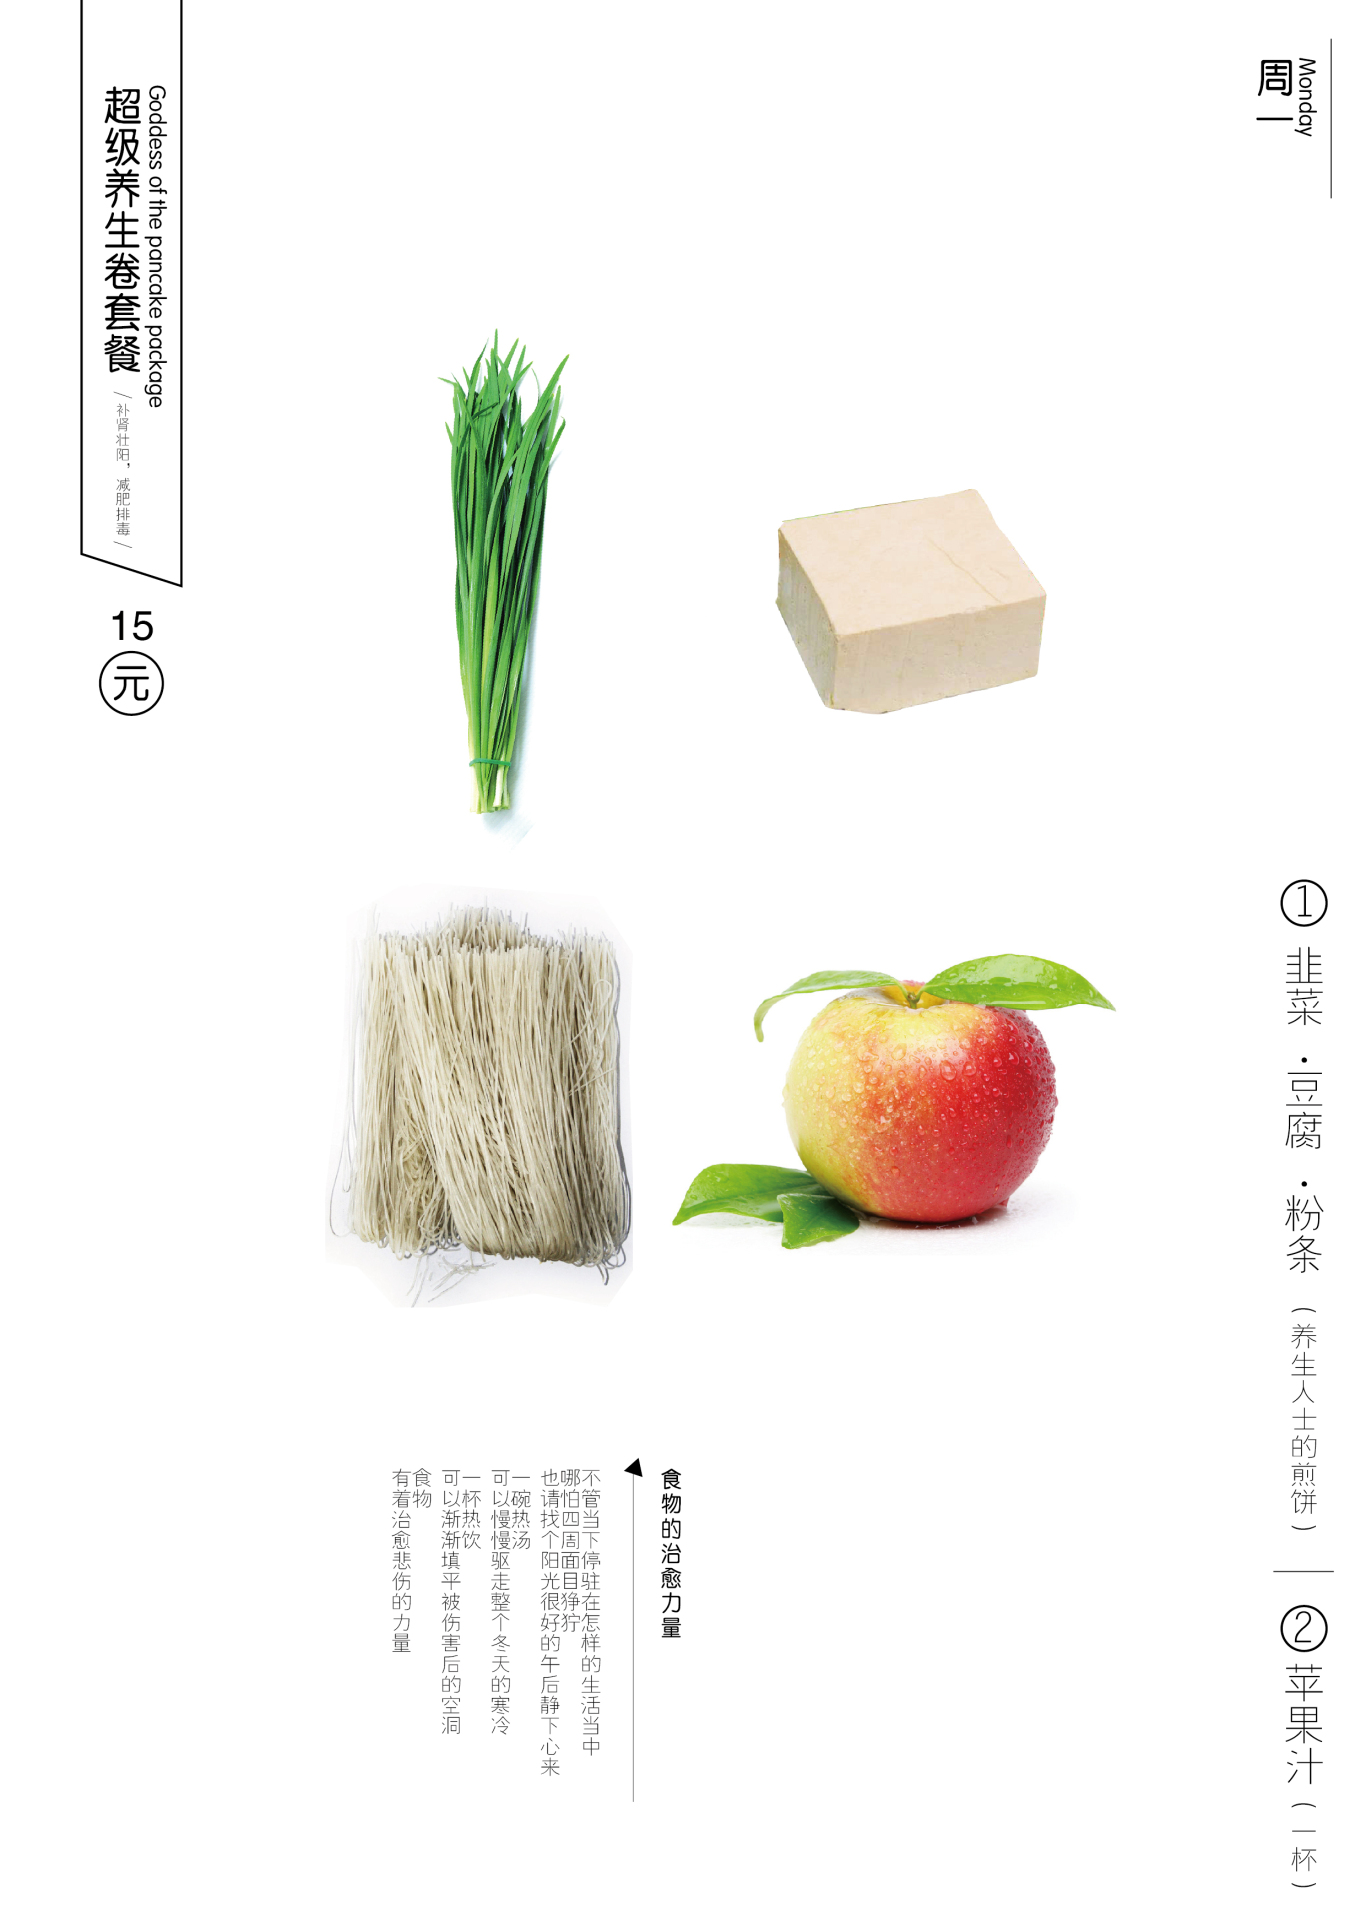 菜菜卷包装菜单设计图10